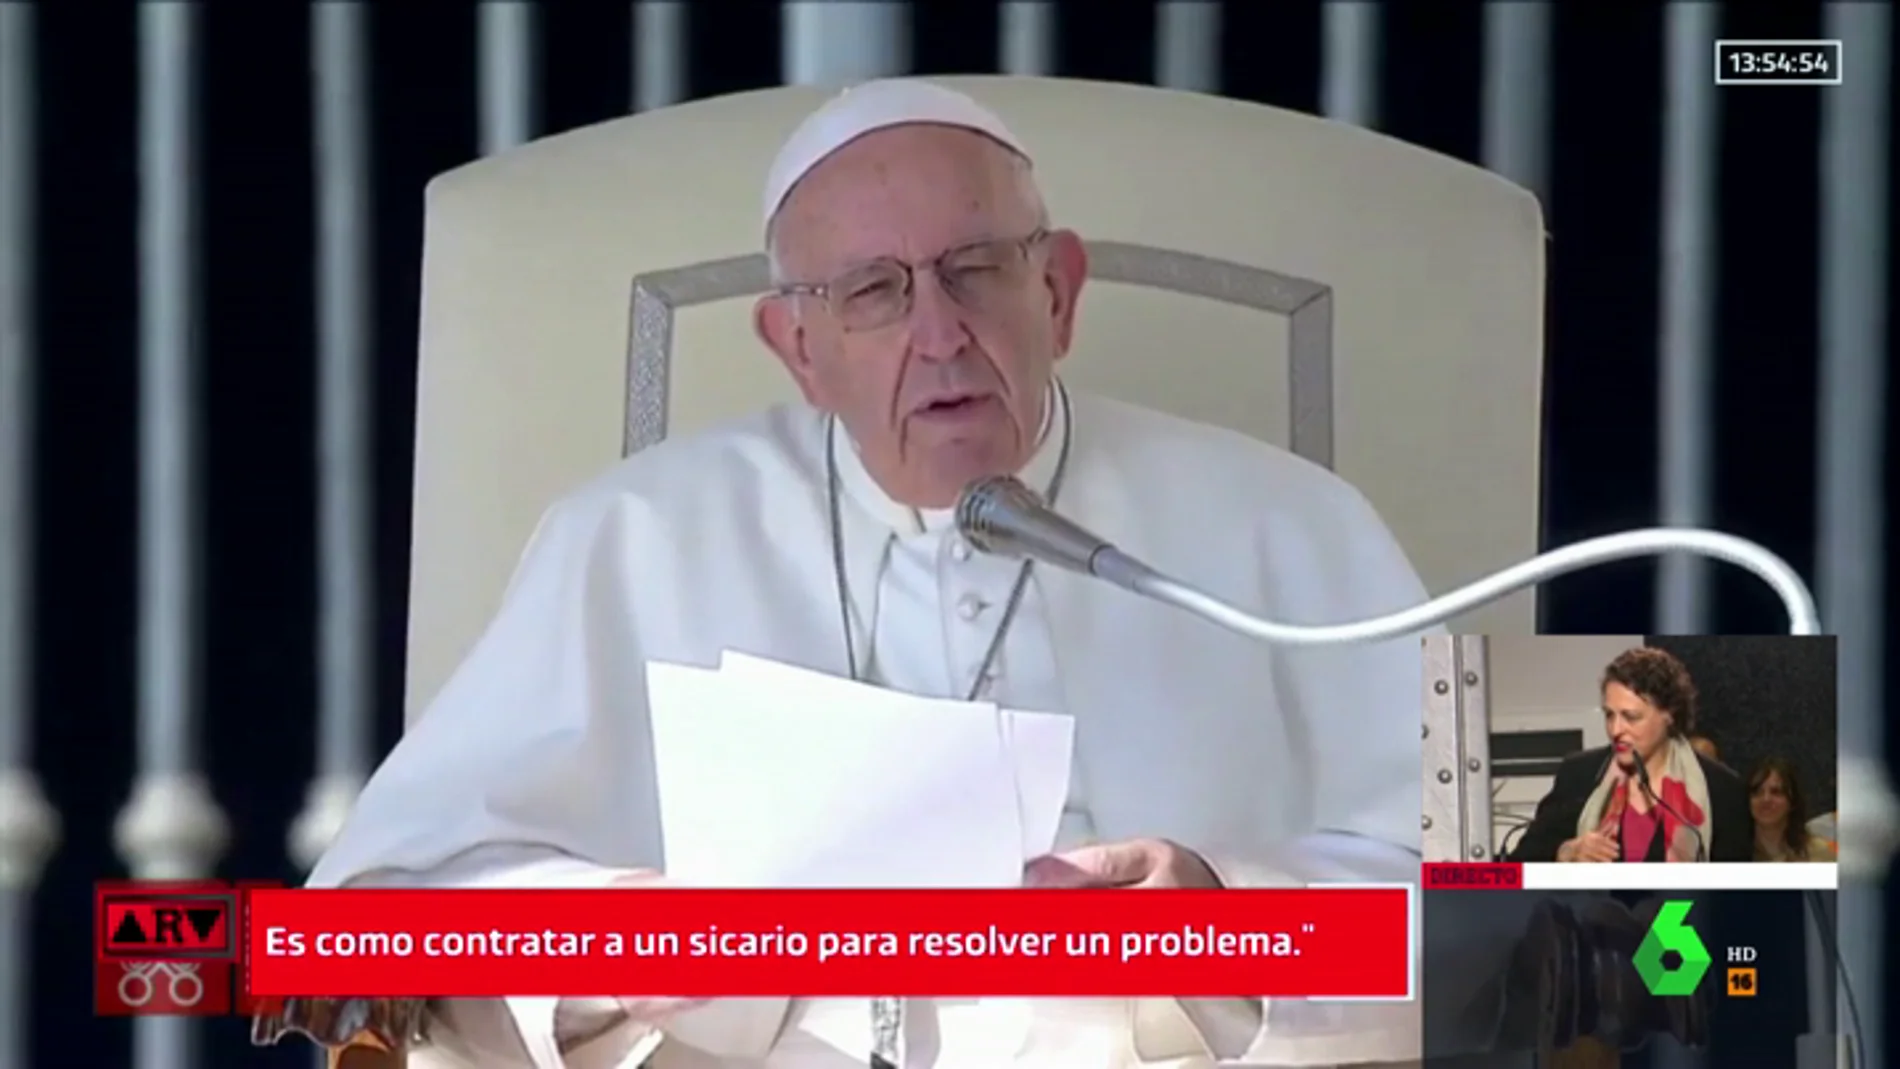 El papa Francisco compara el aborto con "contratar a un sicario para resolver el problema"